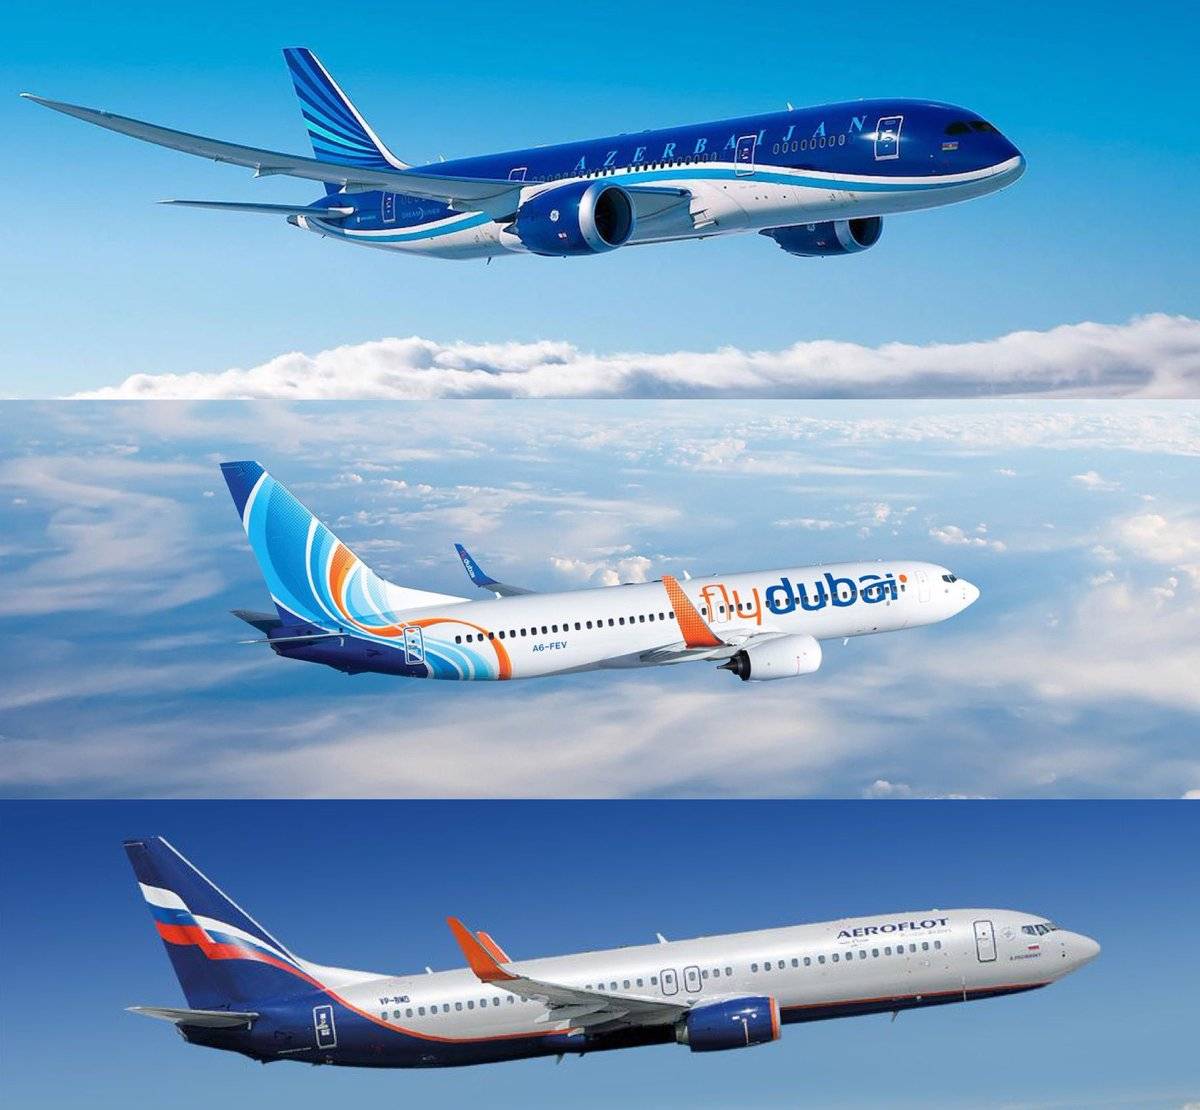 Авиакомпания флай дубай — официальный сайт